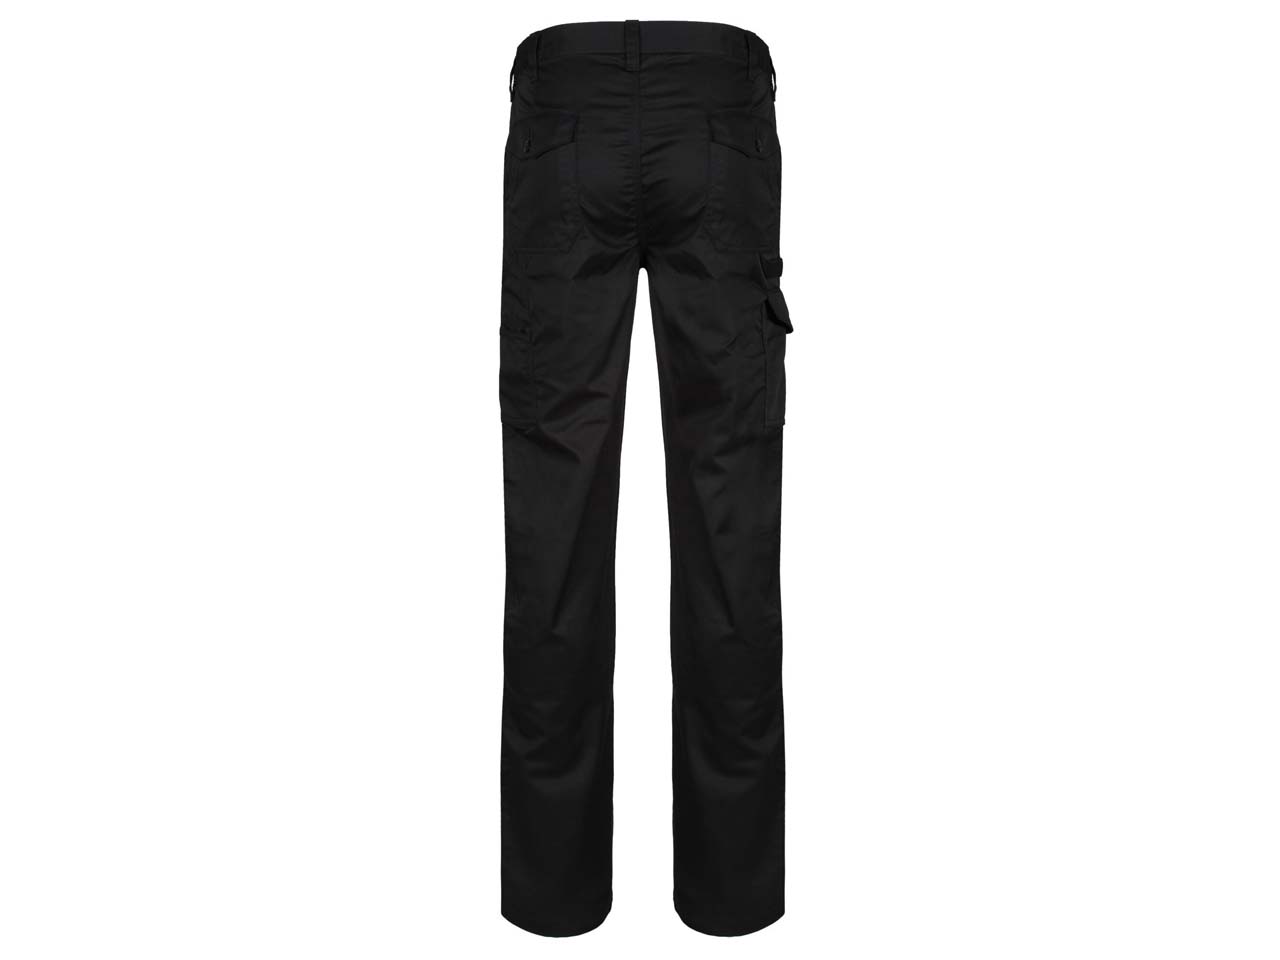 Pro Cargo Trousers - RG291 - PCL Corporatewear Ltd